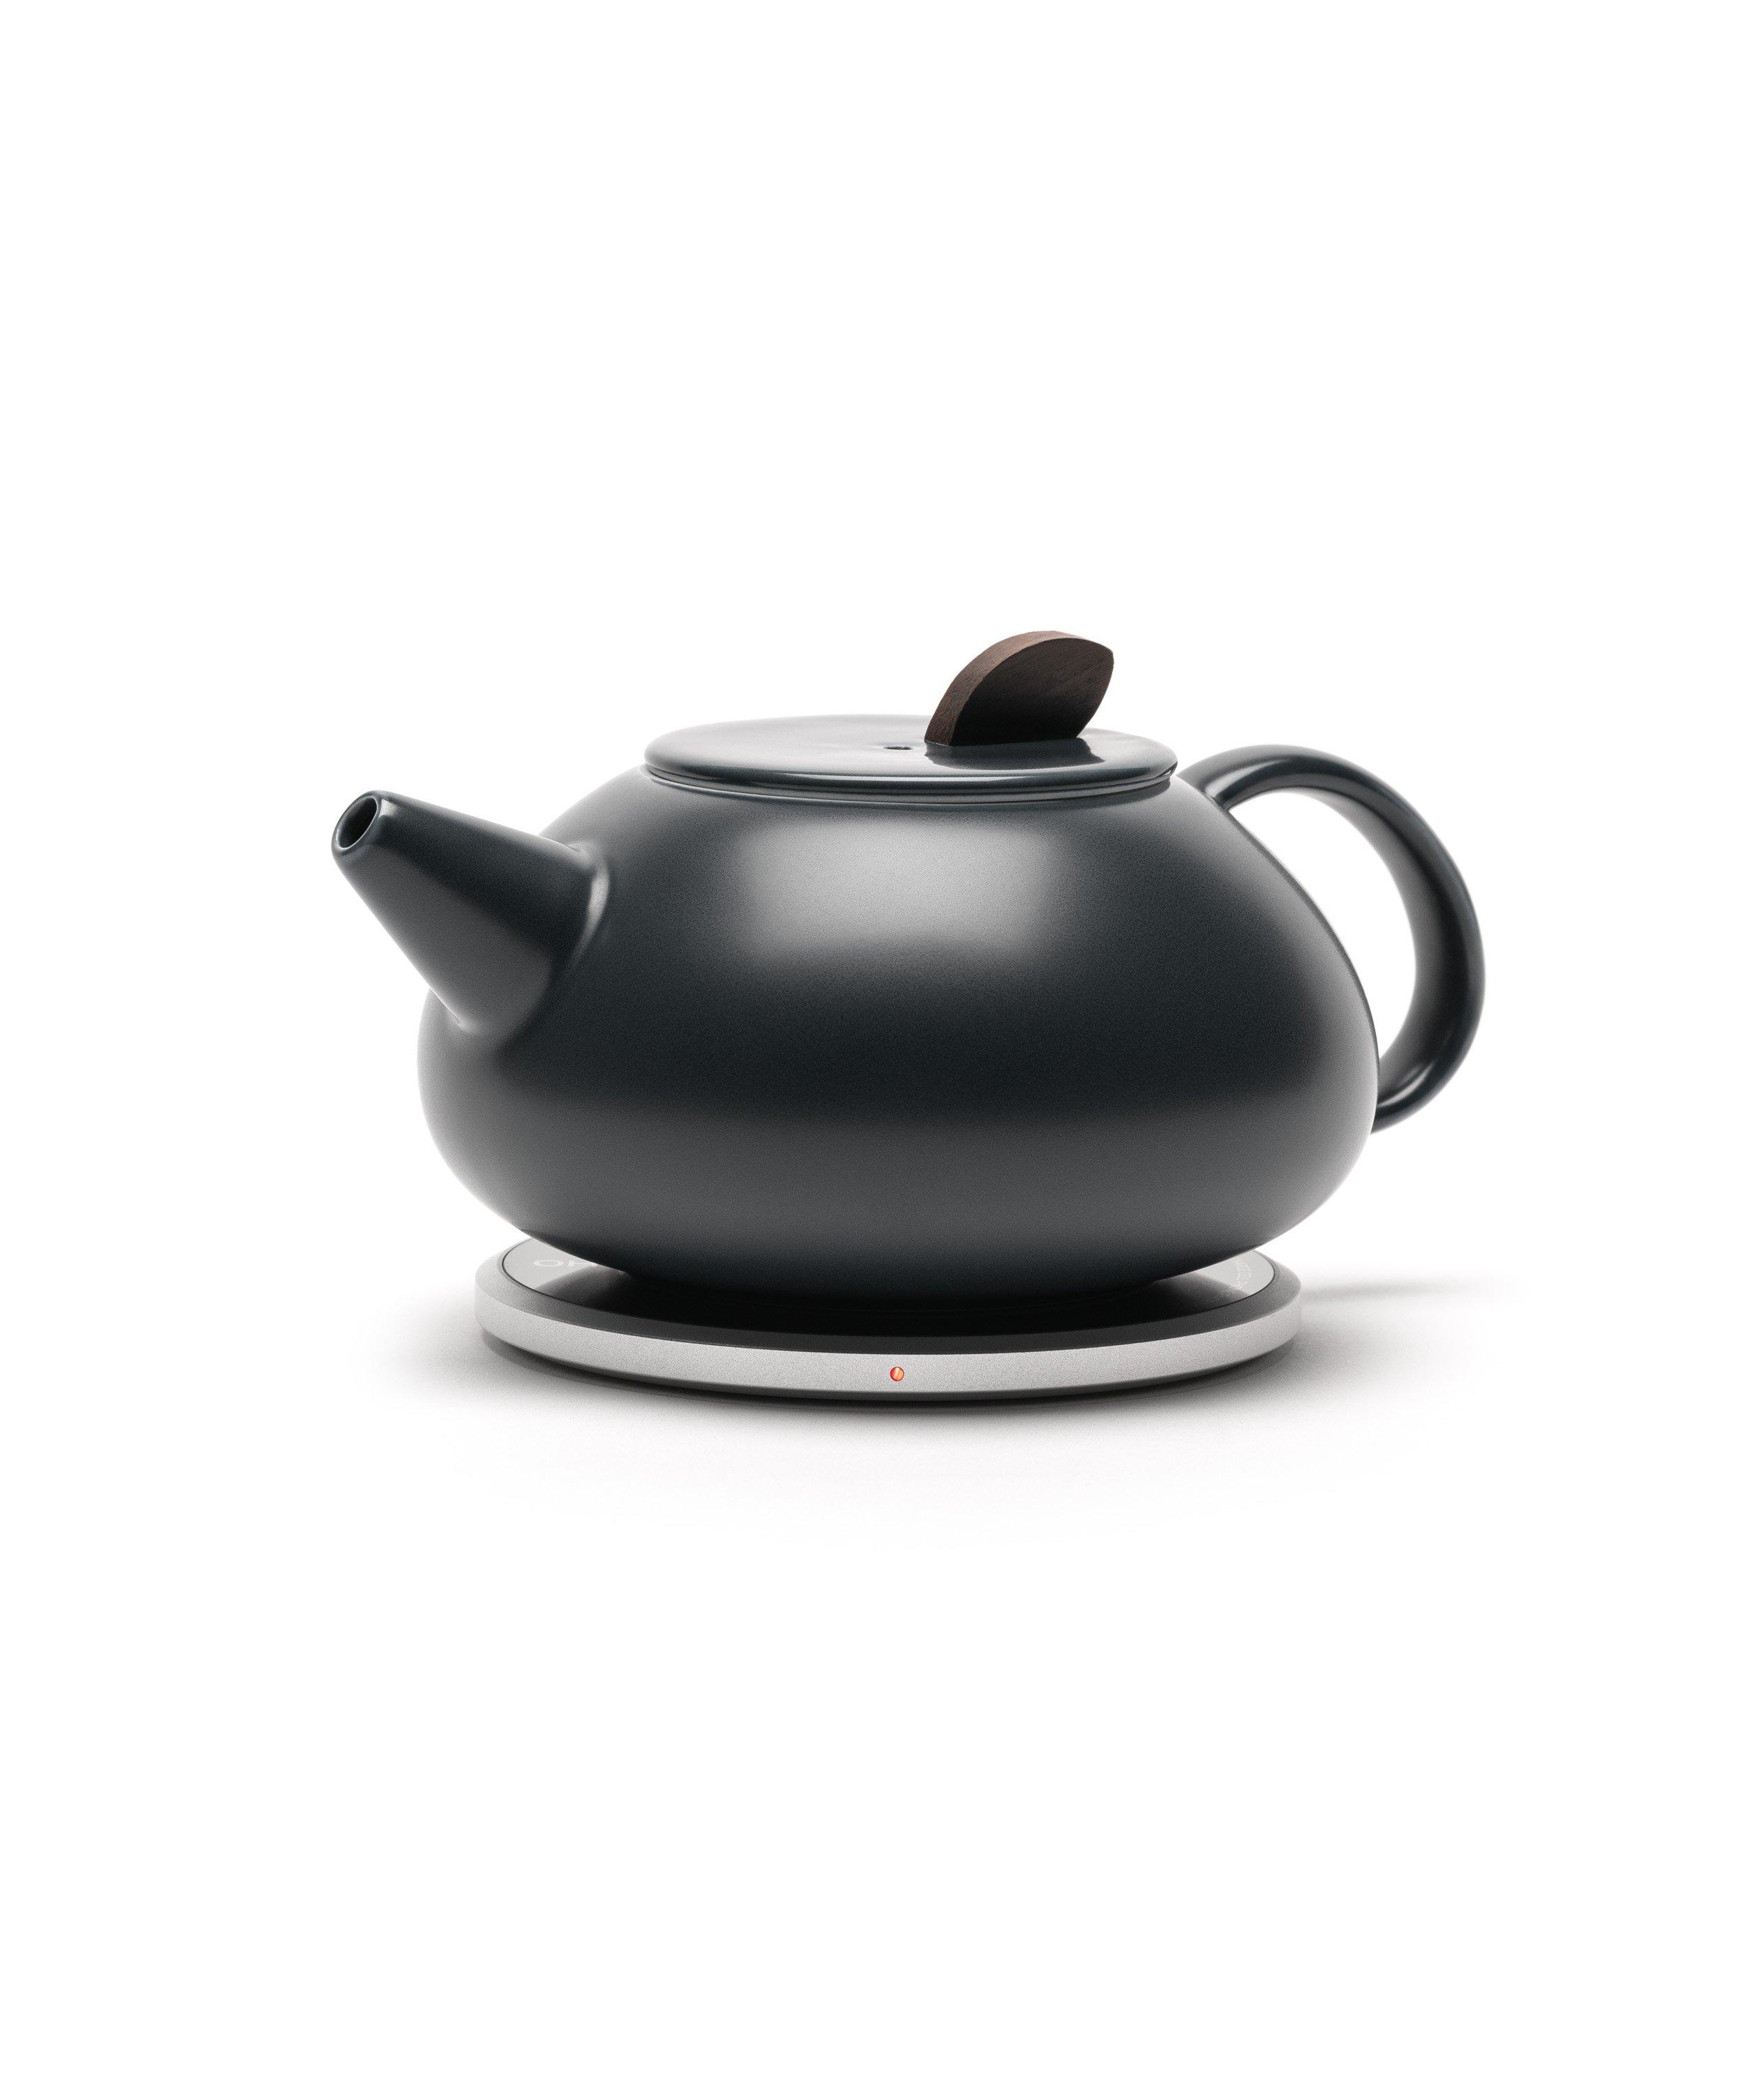 Leiph Self-Heating Teapot Set image 0